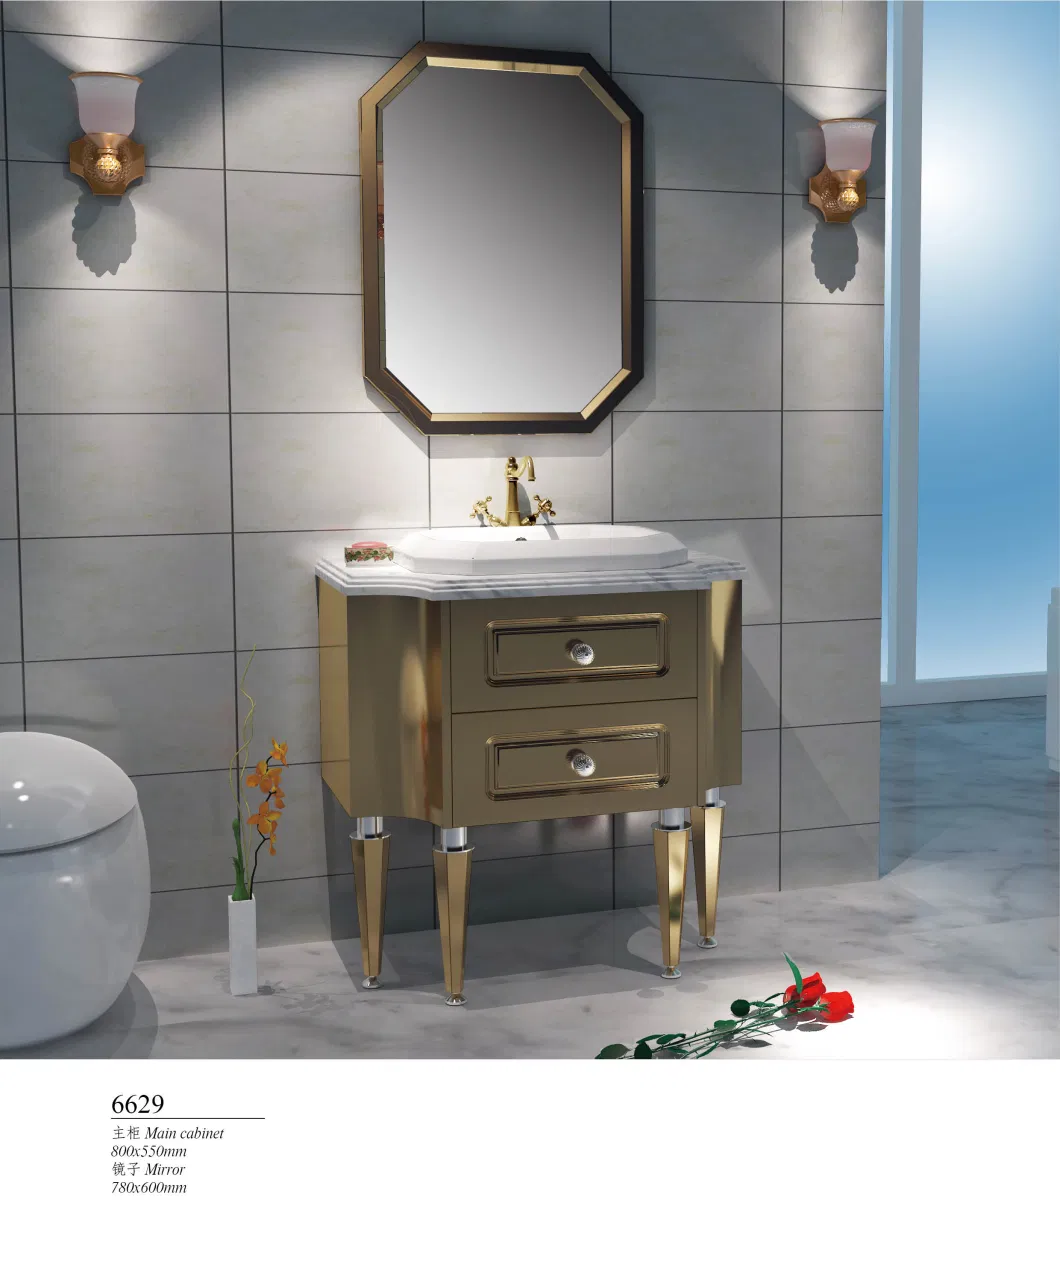 Stainless Steel Floor Standing Metal Bathroom Cabinet Vanity Home Furniture